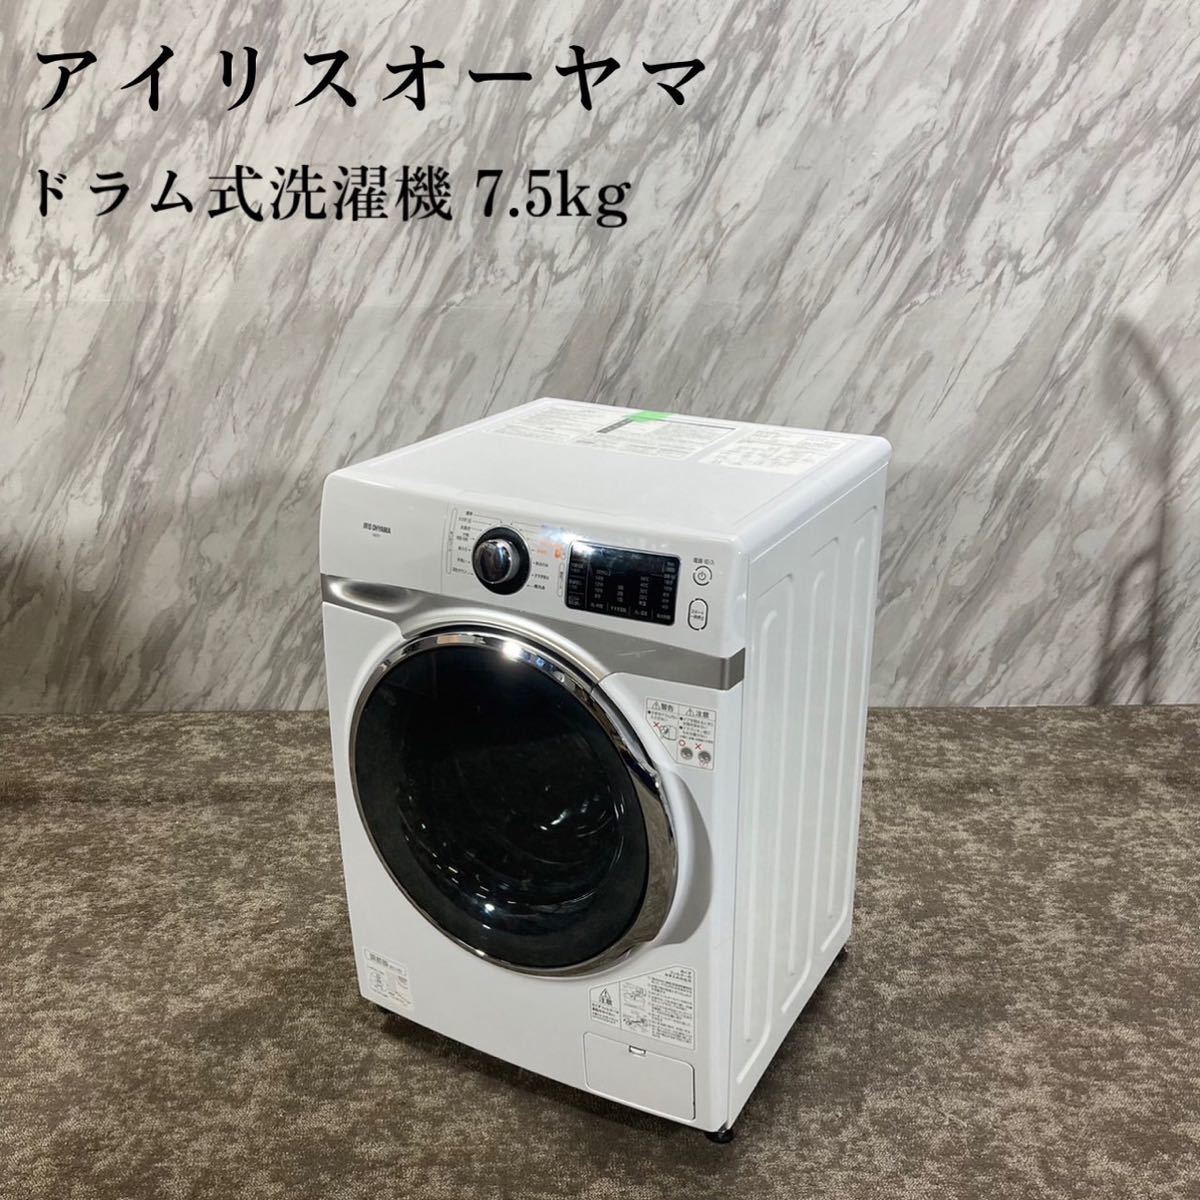 アイリスオーヤマ ドラム式洗濯機 HD71-W/S 7.5kg 家電 G049 www